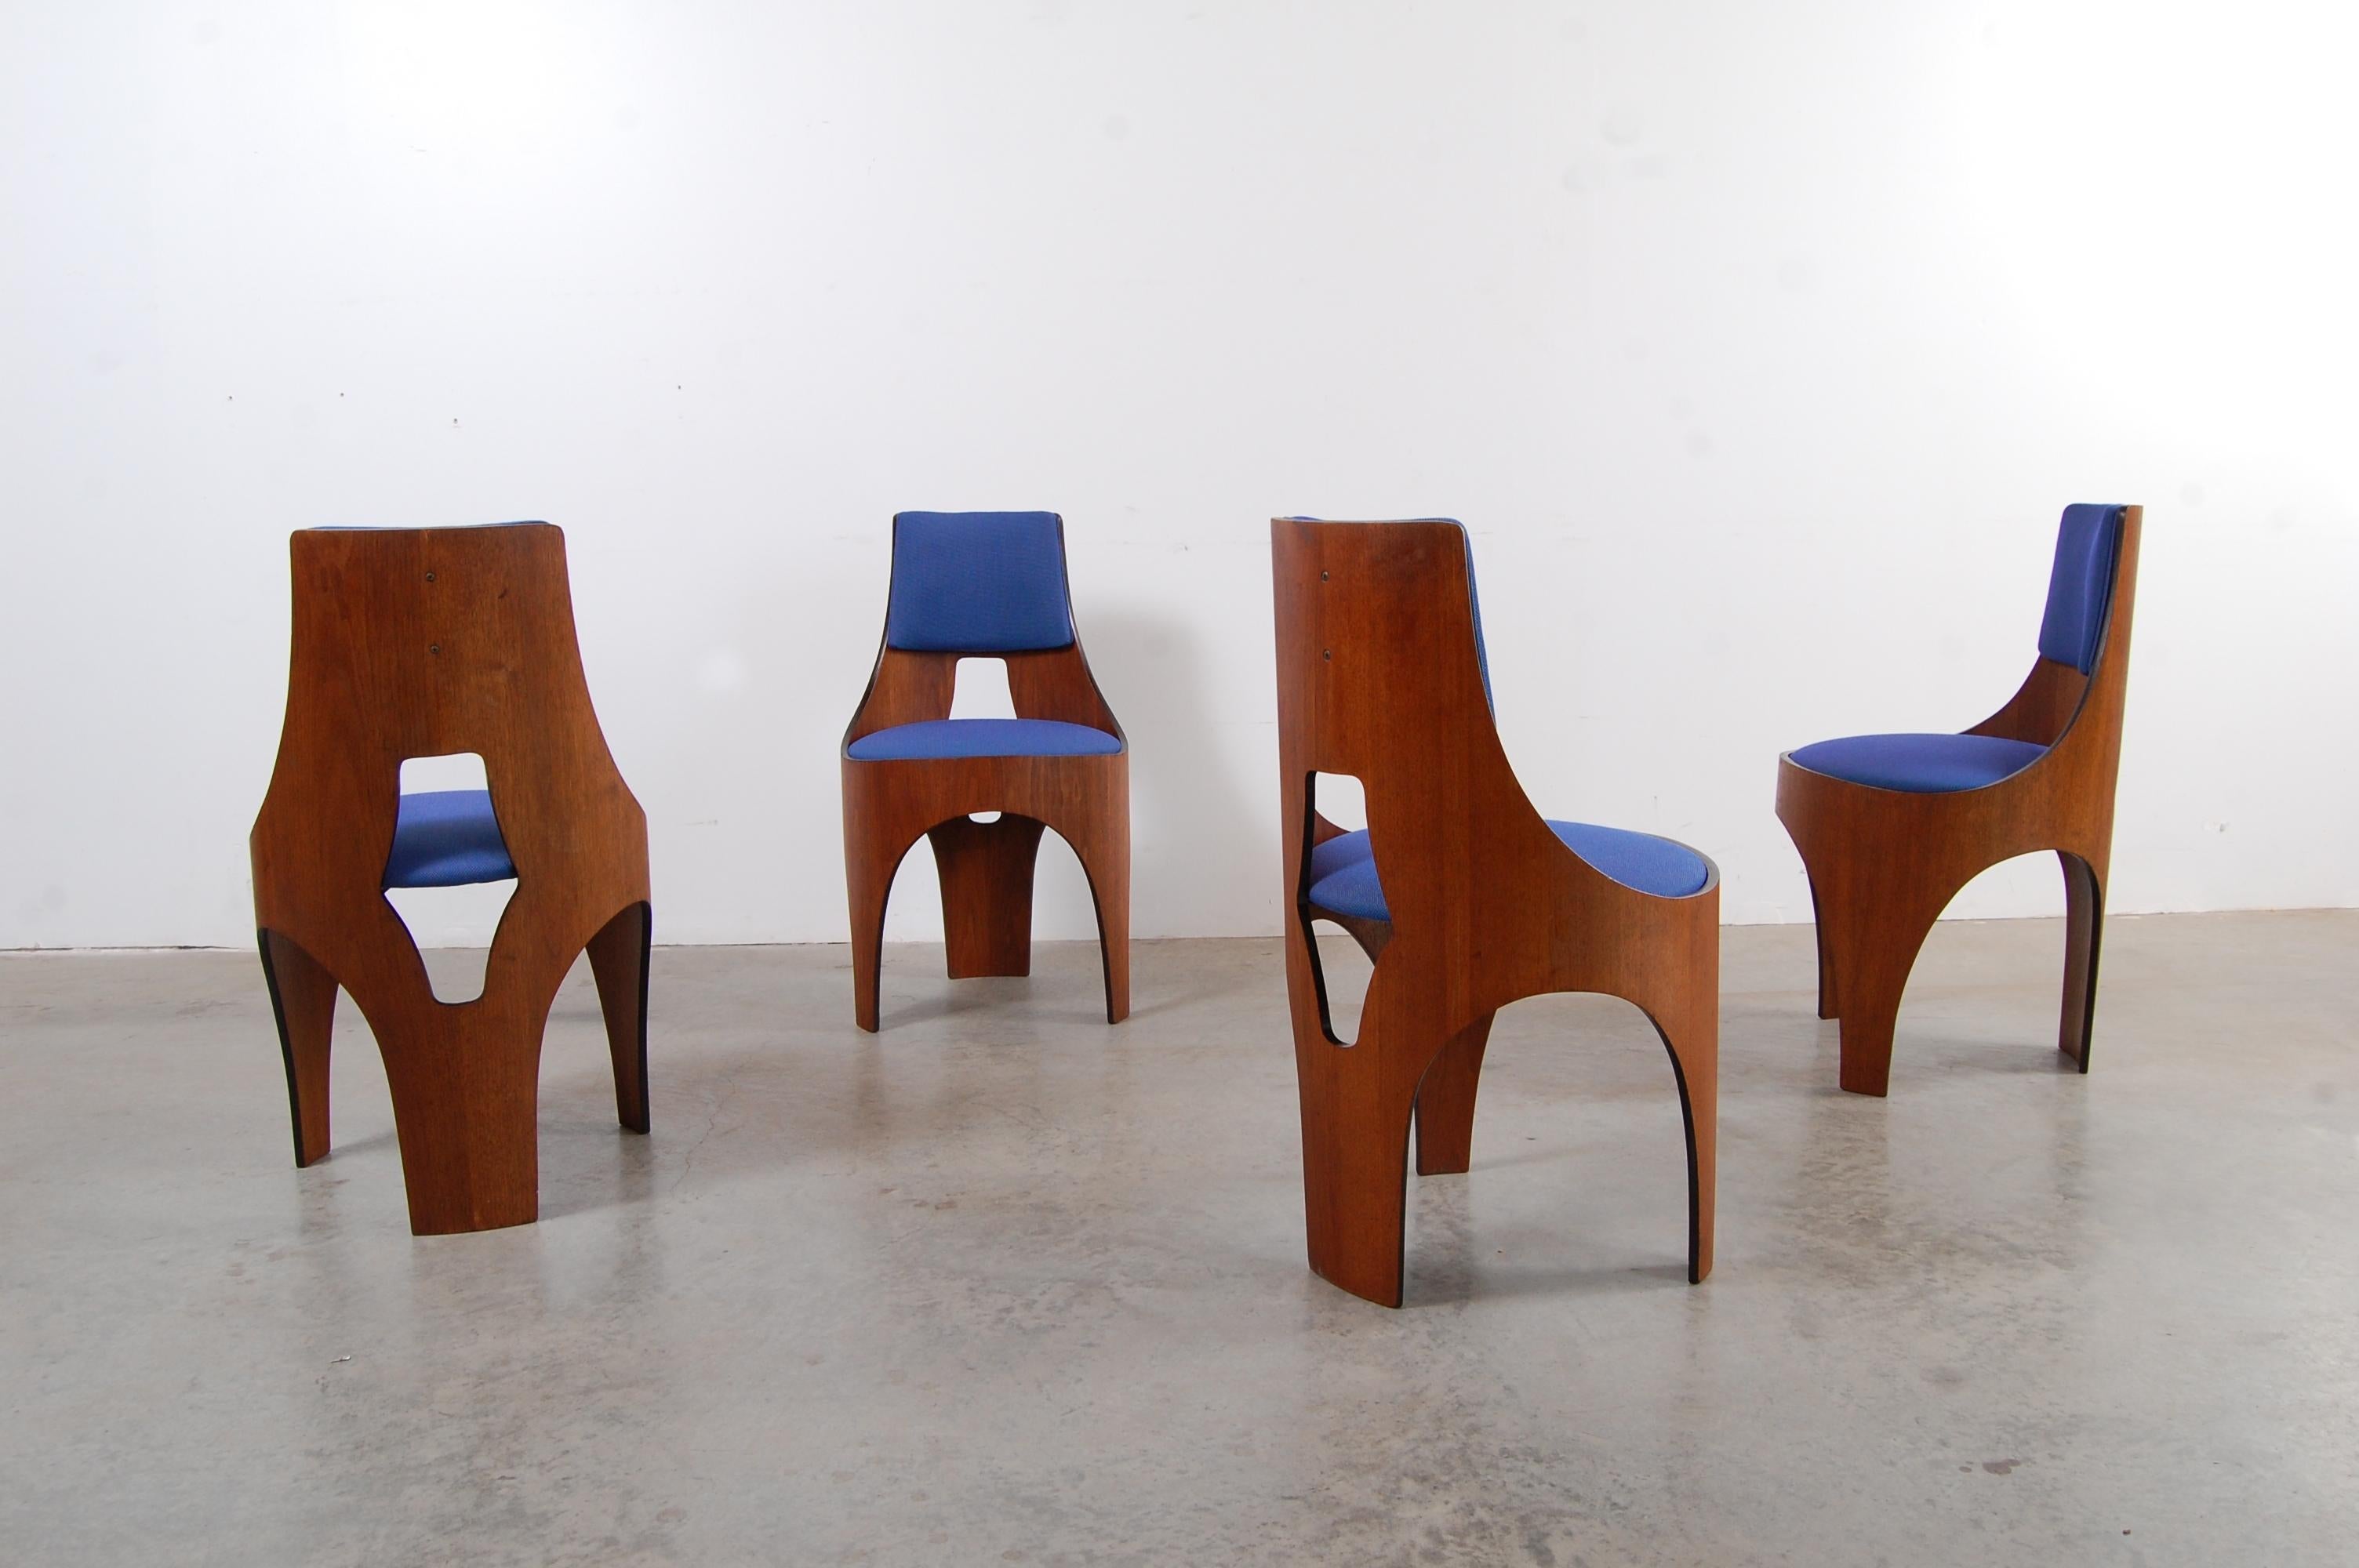 Vier Stühle aus geformtem Walnuss-Sperrholz aus der Cylindra-Linie:: entworfen von Henry Glass und hergestellt von Richbilt MFG:: um 1966. Henry Glass wurde in Wien geboren und absolvierte dort eine Ausbildung in Industriedesign und Architektur.